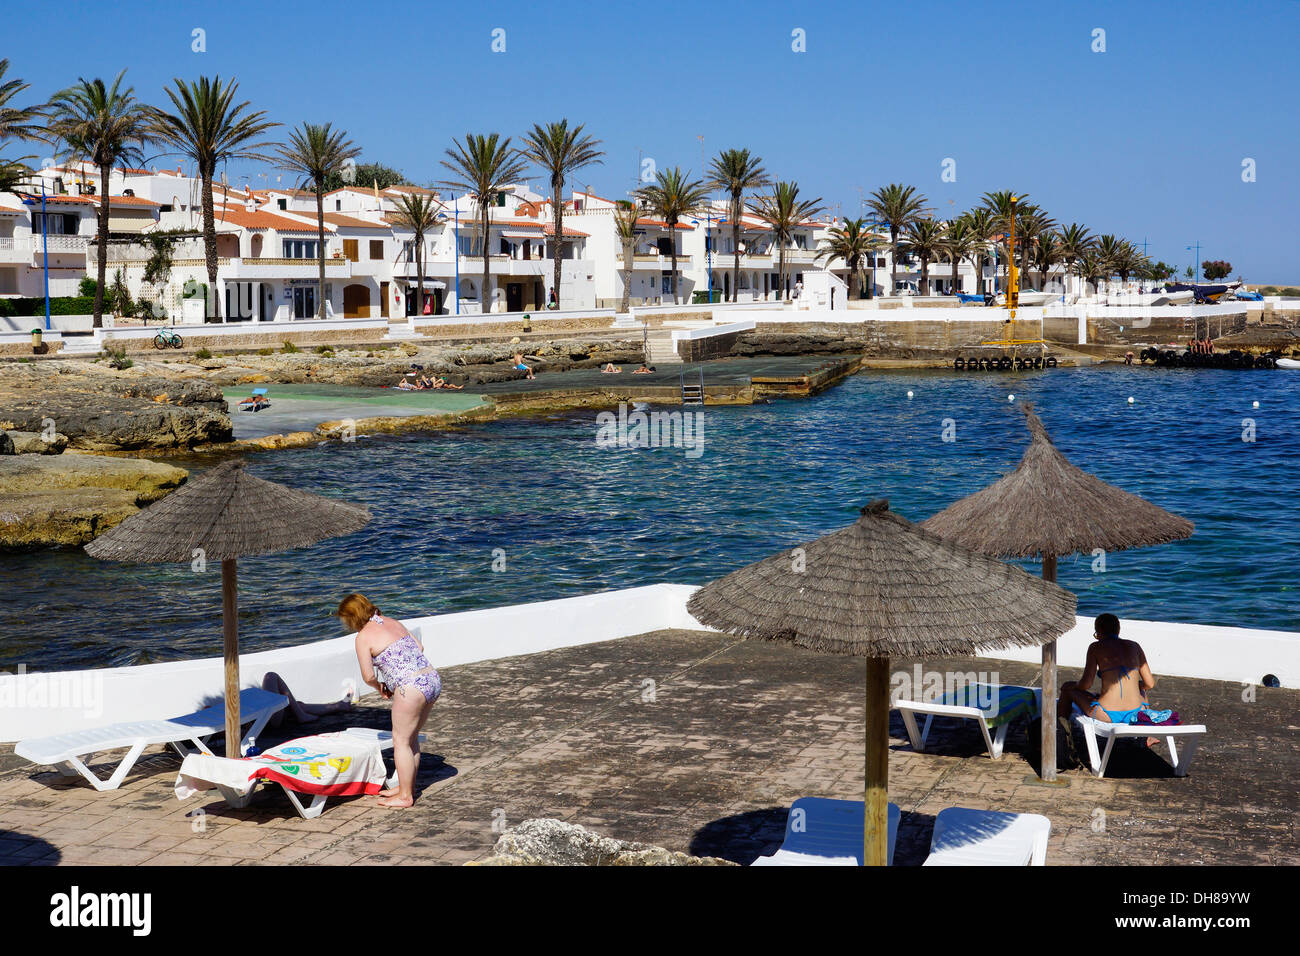 holiday resort, s'algar, sant lluis, menorca, spanien Stock Photo